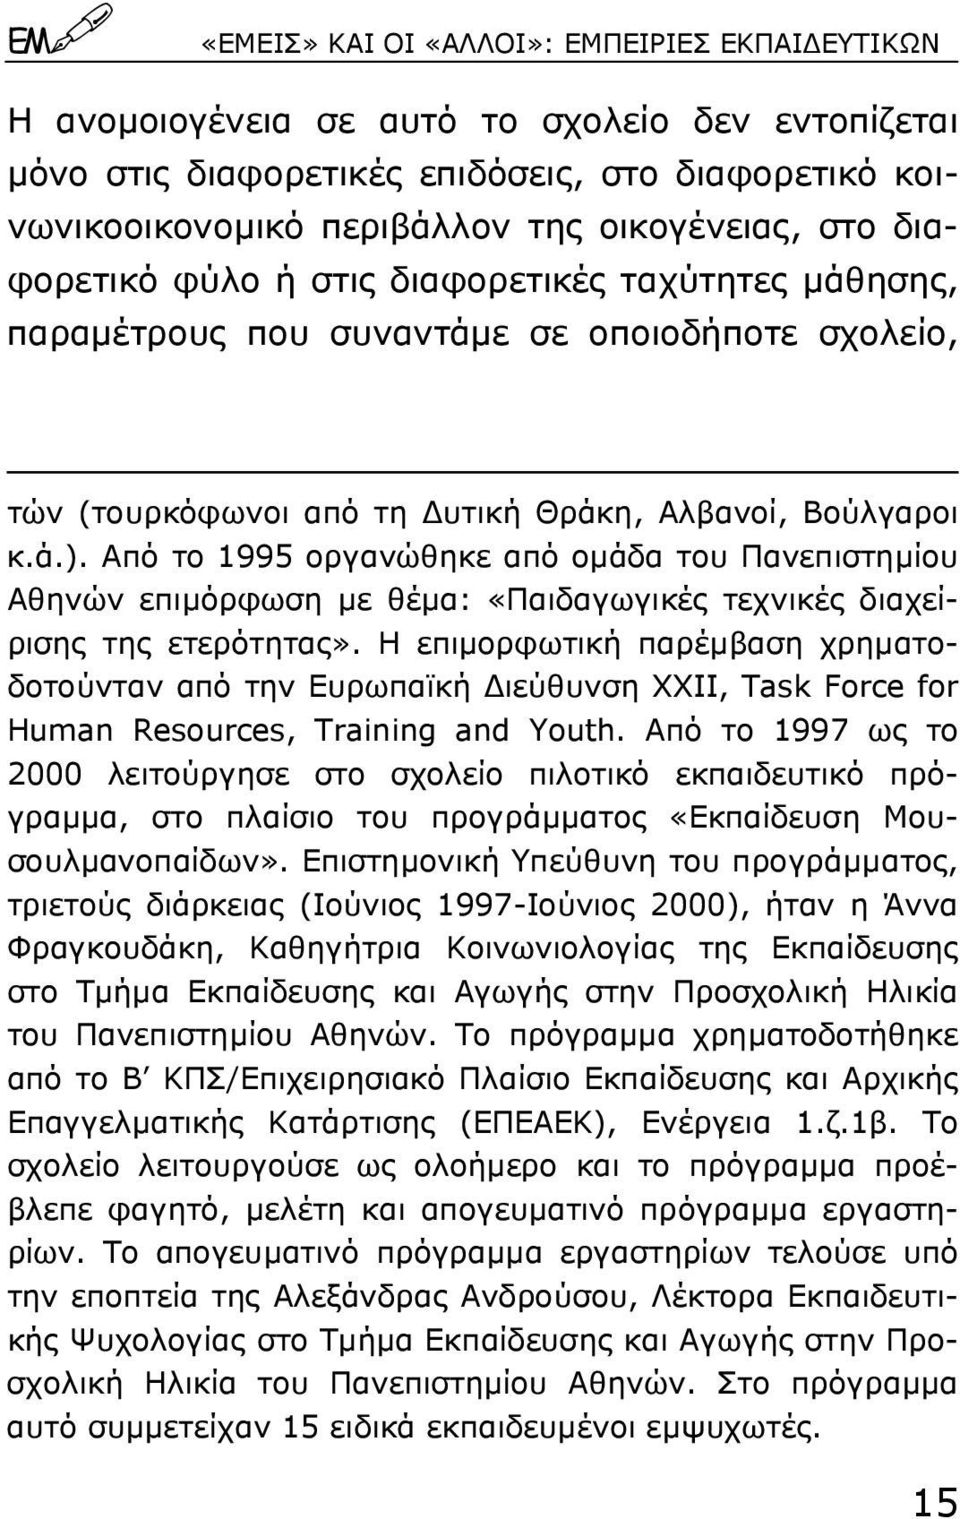 Από το 1995 οργανώθηκε από οµάδα του Πανεπιστηµίου Αθηνών επιµόρφωση µε θέµα: «Παιδαγωγικές τεχνικές διαχείρισης της ετερότητας».